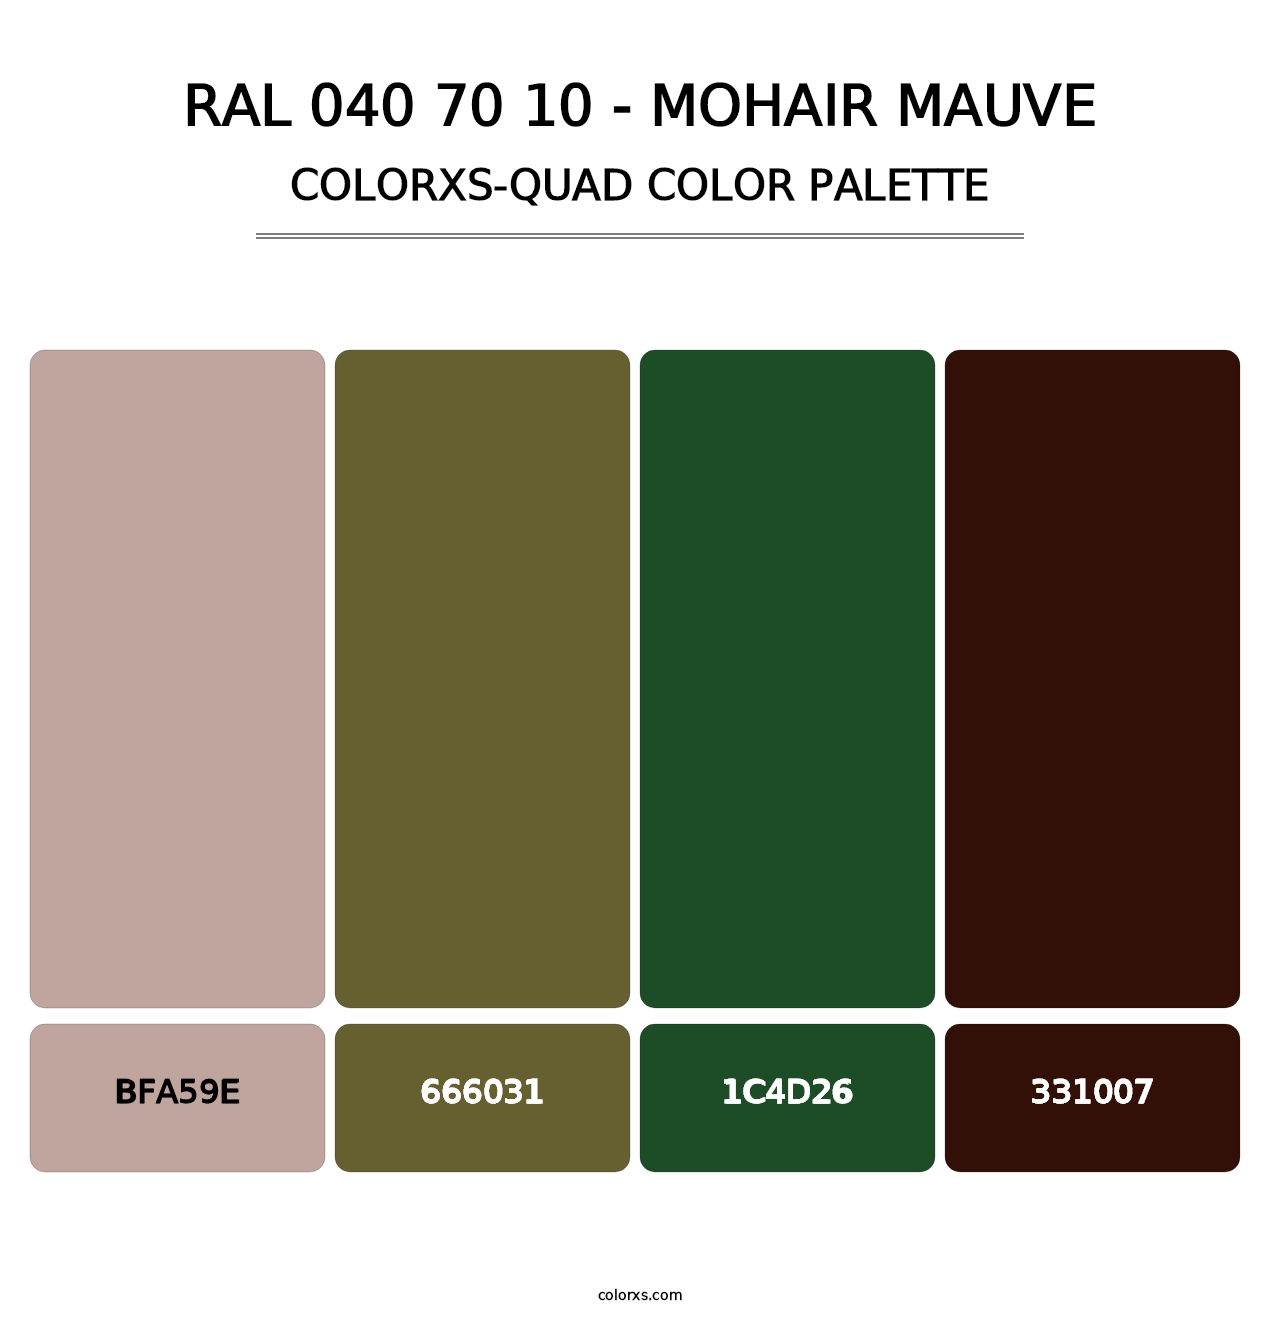 RAL 040 70 10 - Mohair Mauve - Colorxs Quad Palette